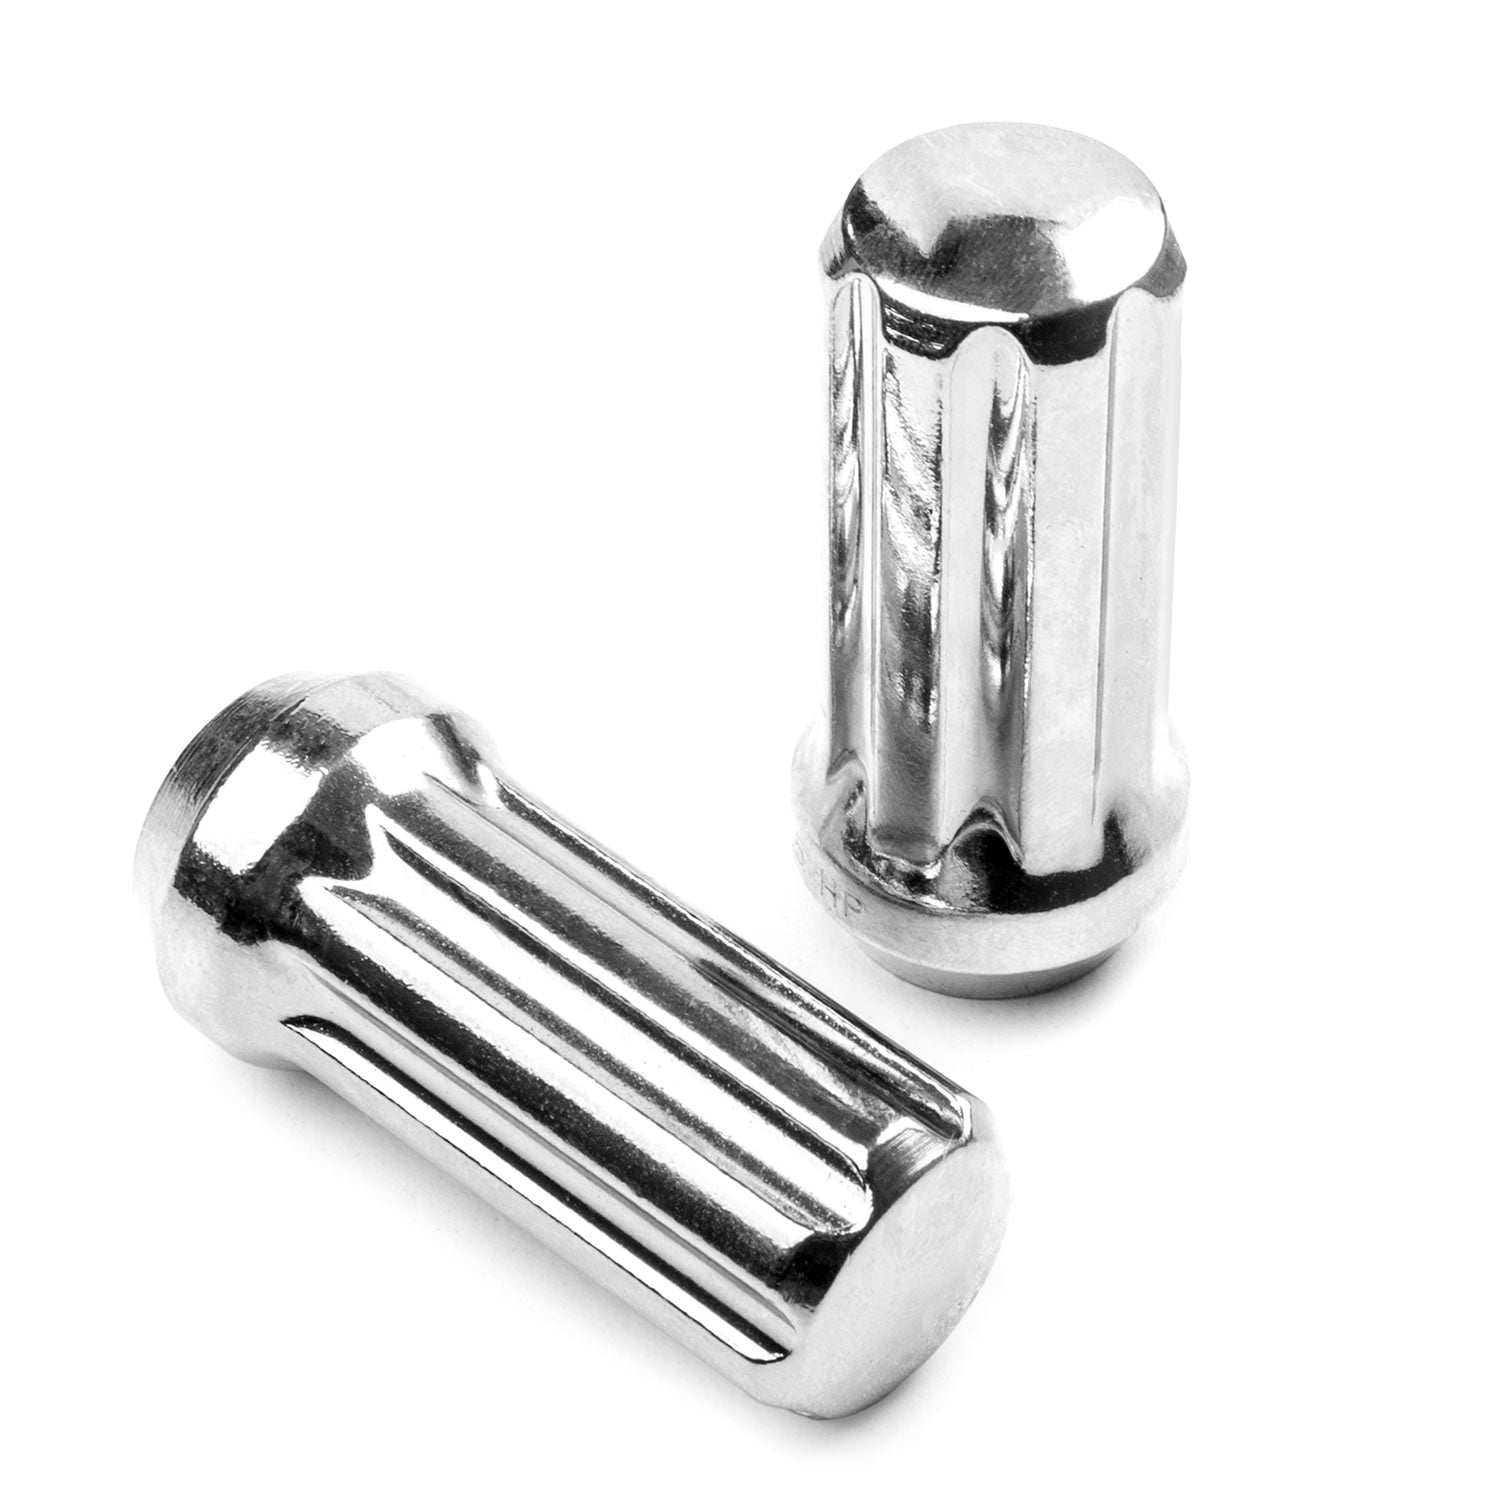 24 Piece Set Spline Open Lug Nuts Chrome 14mm x 1.5 Lug Nuts with Key W1014STO